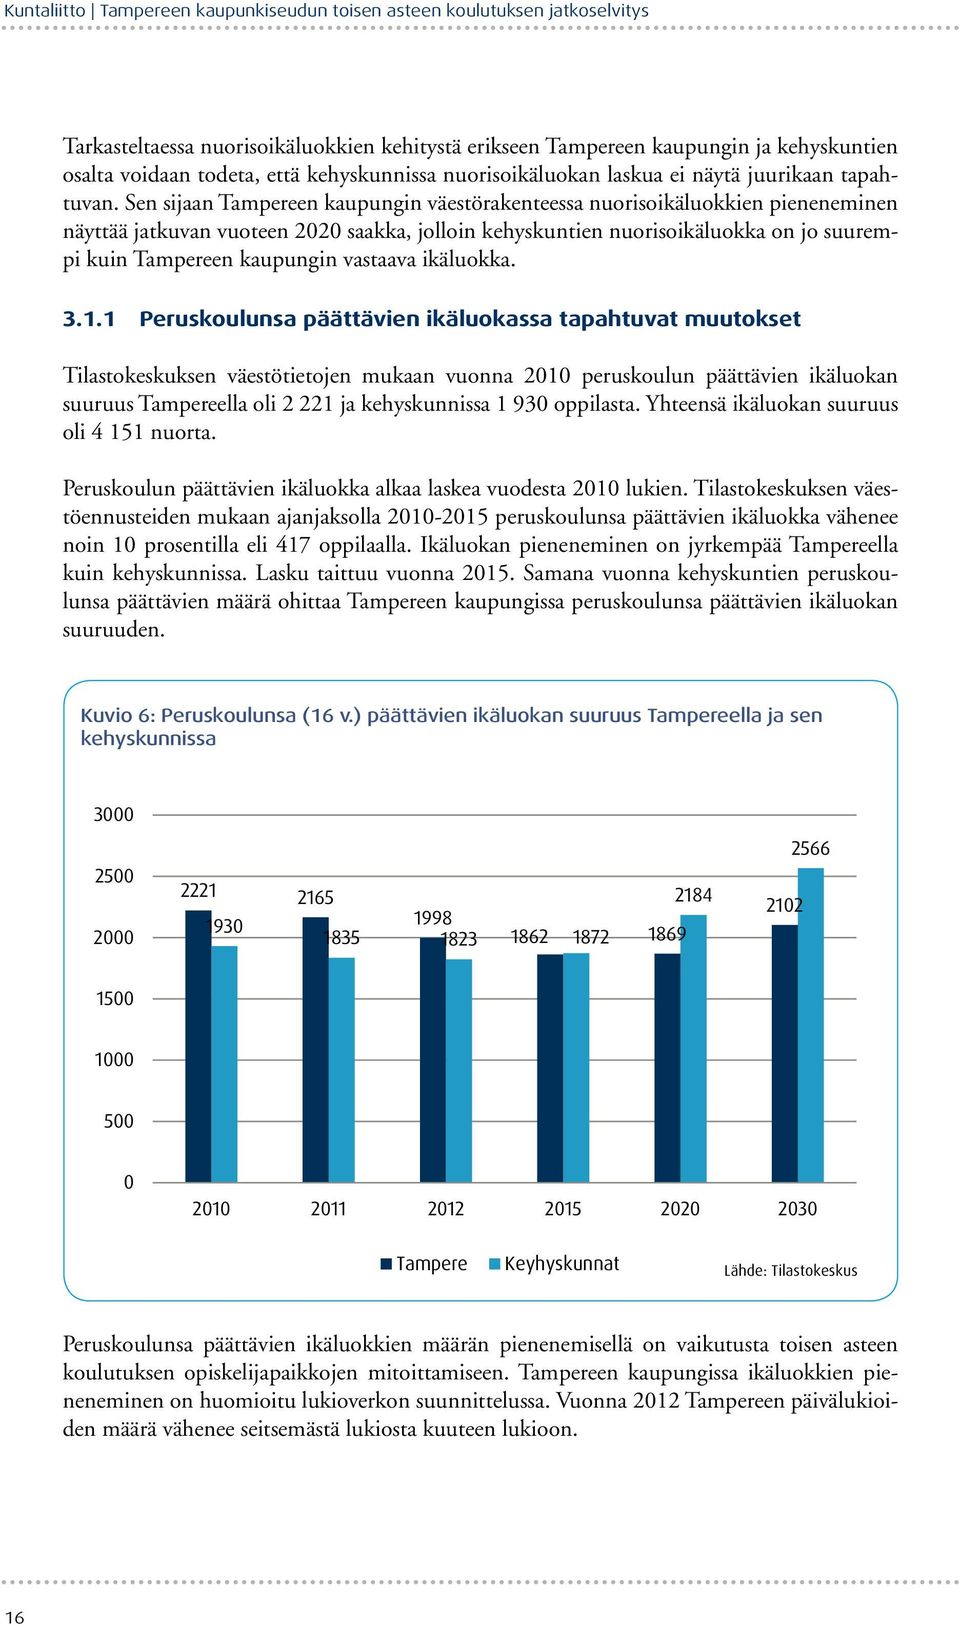 Sen sijaan Tampereen kaupungin väestörakenteessa nuorisoikäluokkien pieneneminen näyttää jatkuvan vuoteen 2020 saakka, jolloin kehyskuntien nuorisoikäluokka on jo suurempi kuin Tampereen kaupungin